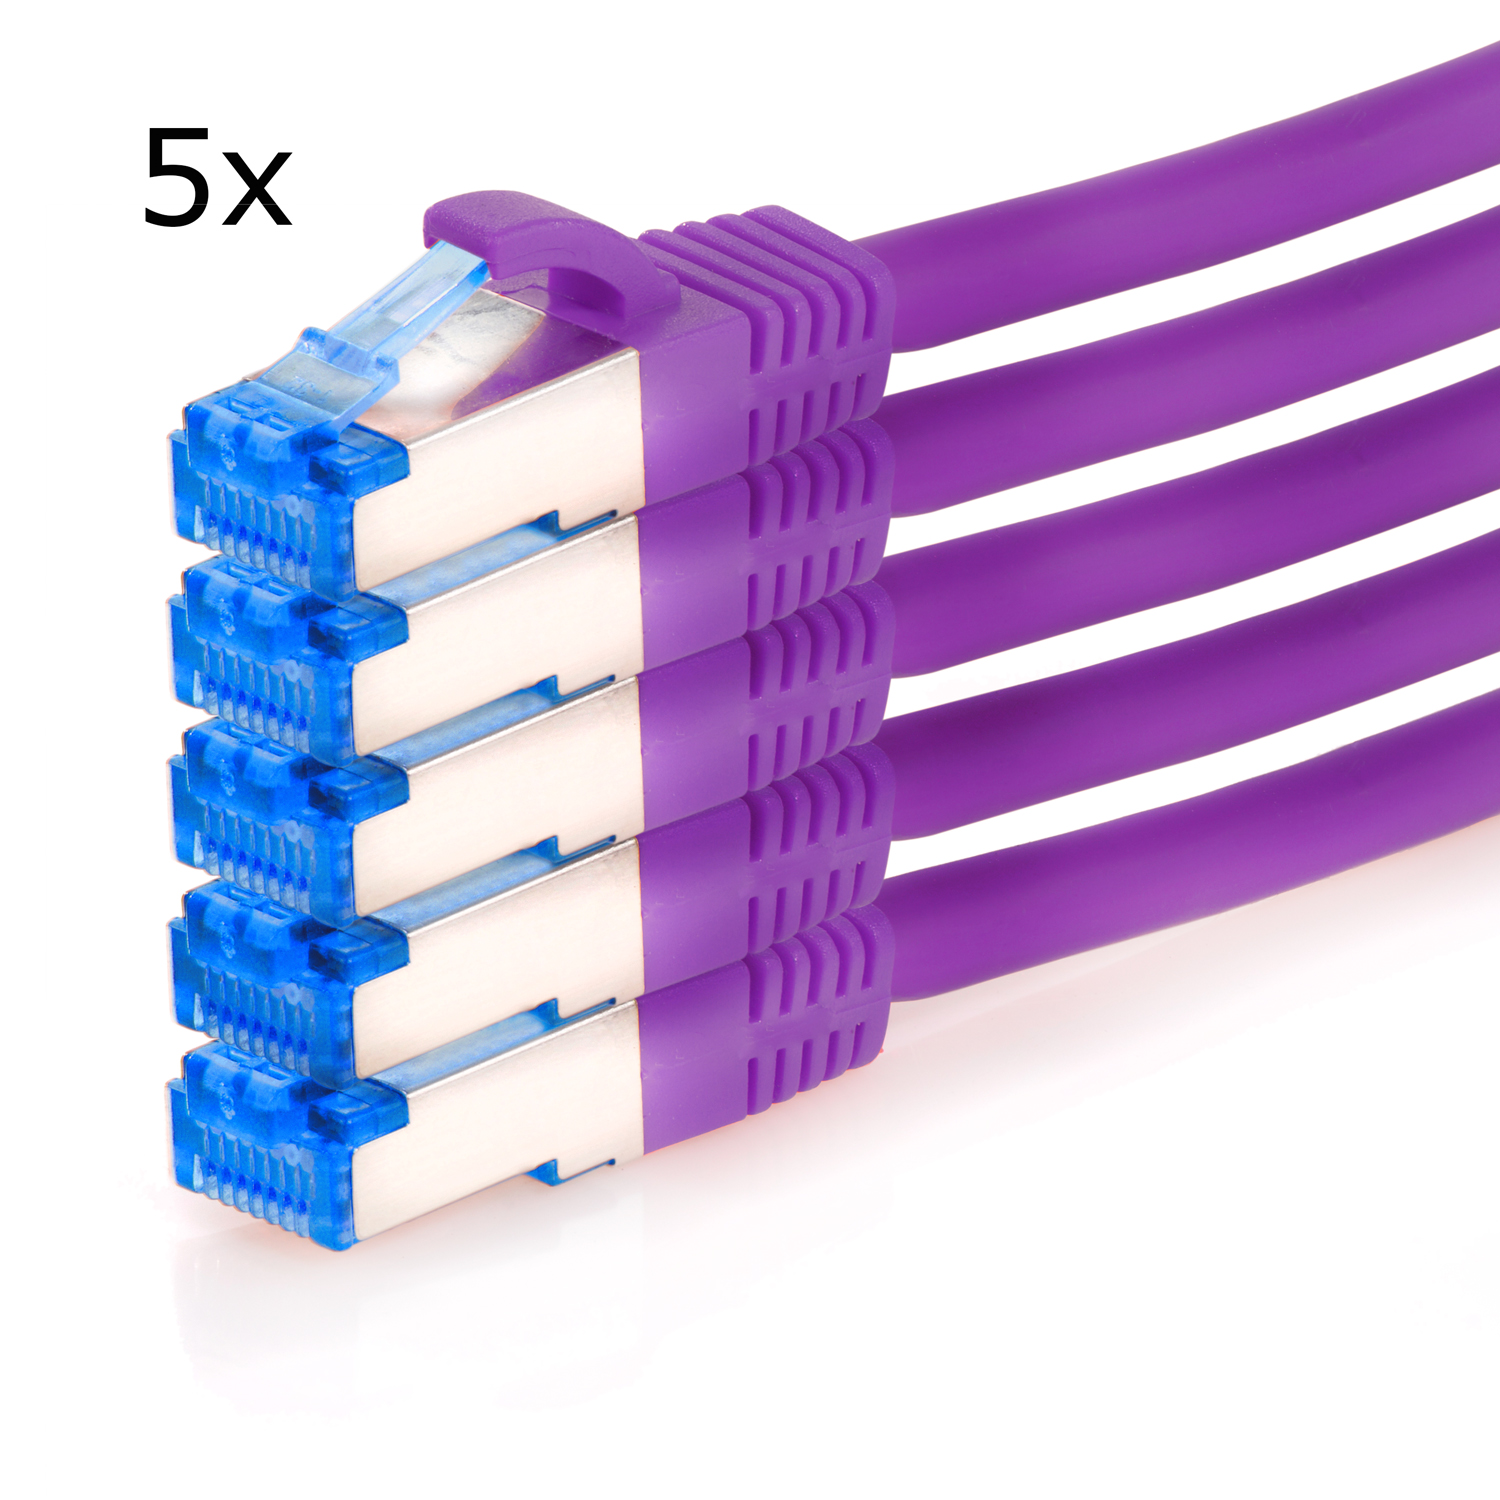 TPFNET 5er S/FTP 0,5 Netzwerkkabel, / 0,50m Netzwerkkabel Patchkabel 10GBit, violett, Pack m